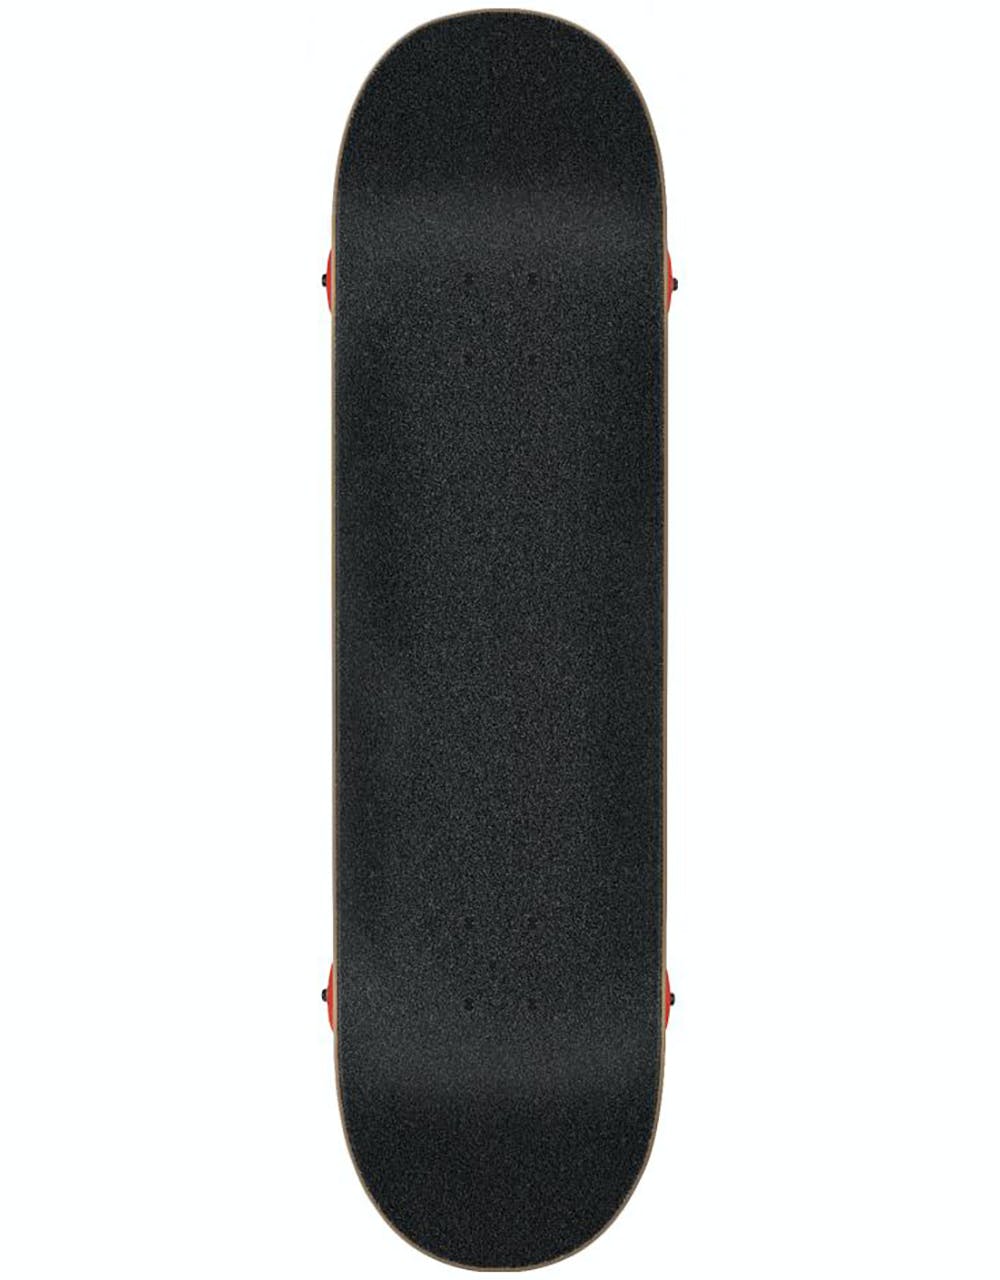 Santa Cruz Brush Dot Complete Skateboard - 7.5"